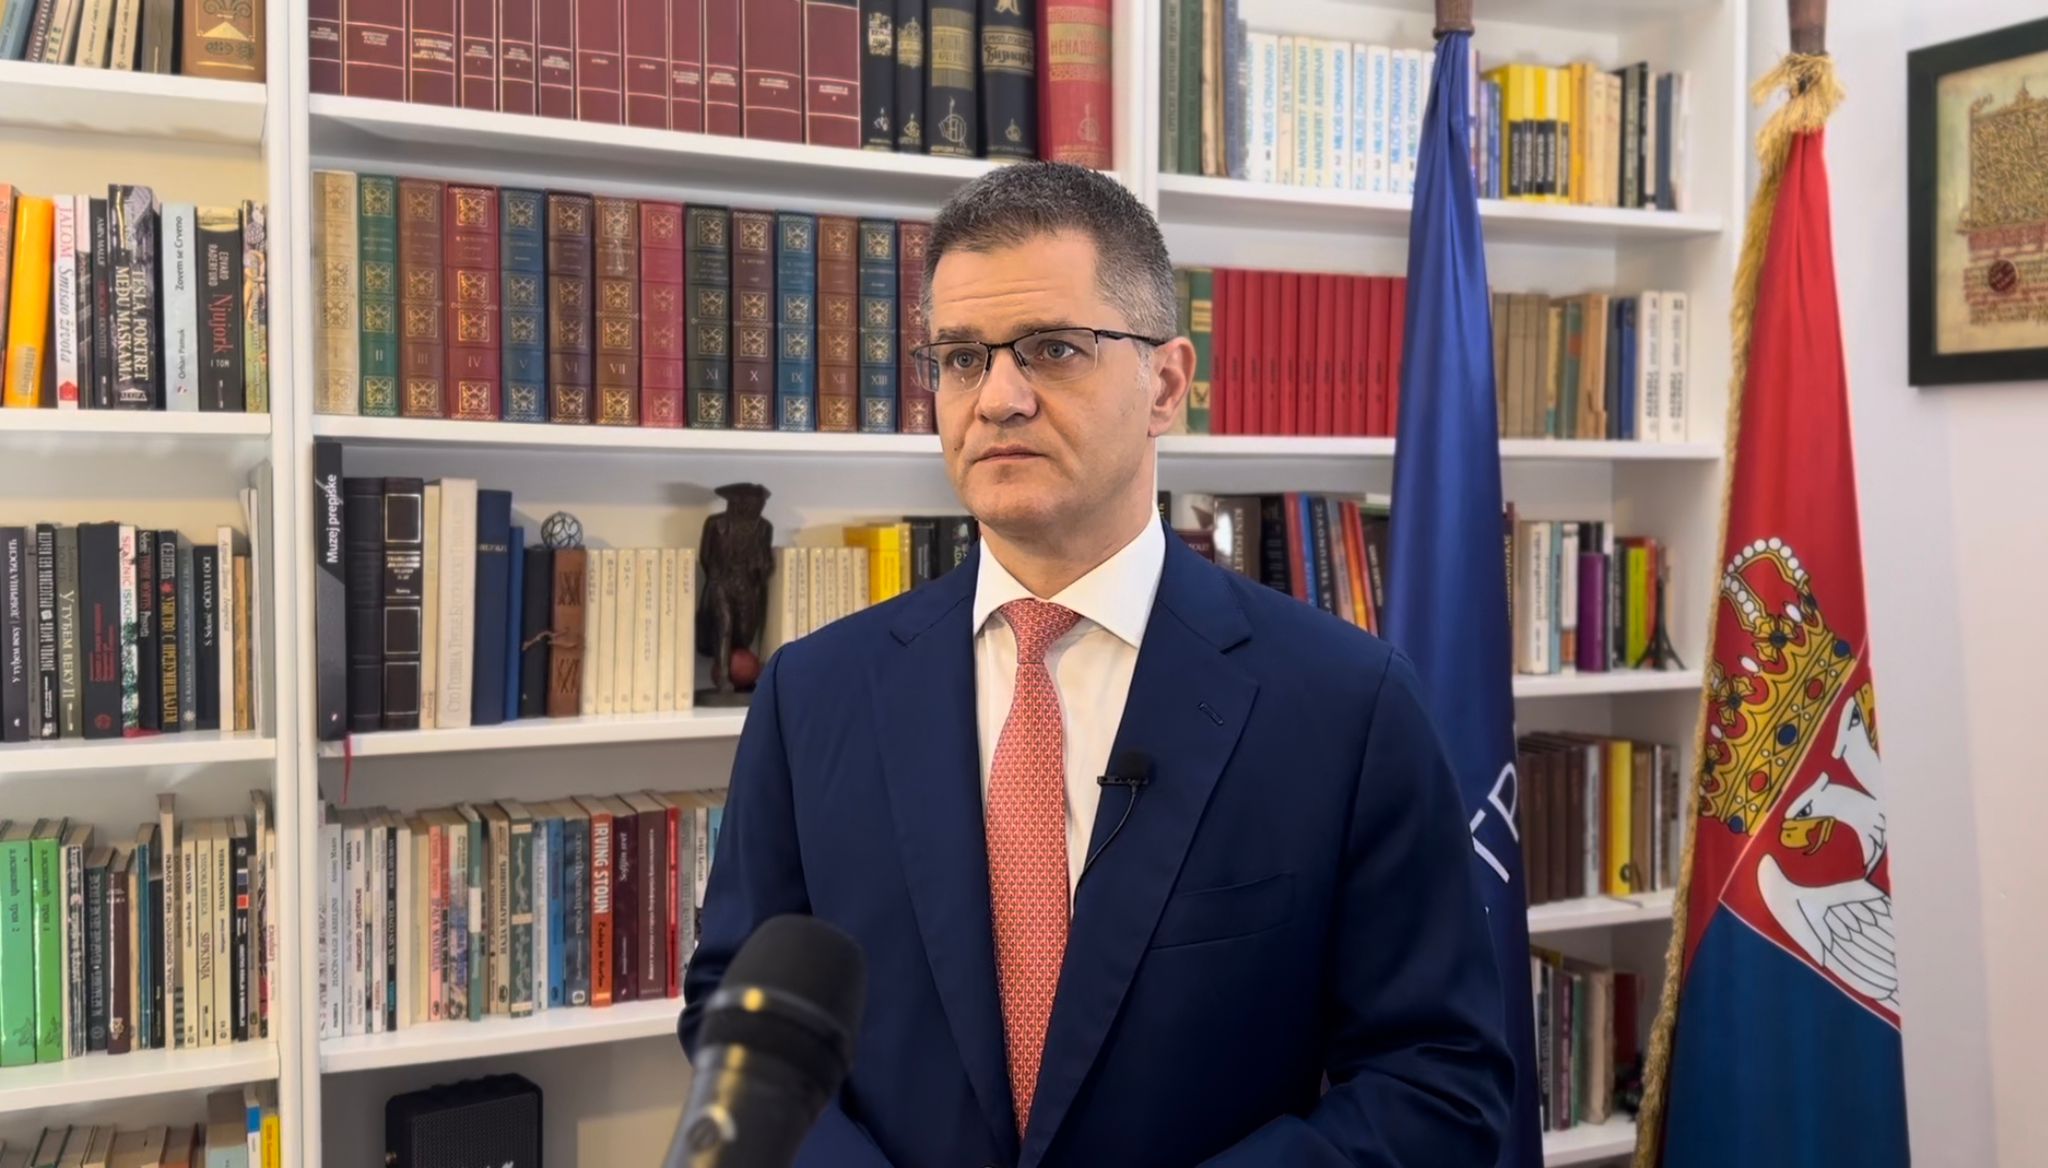 Јеремић: Глас за Народну странку је сигуран избор за војну и политичку неутралност Србије